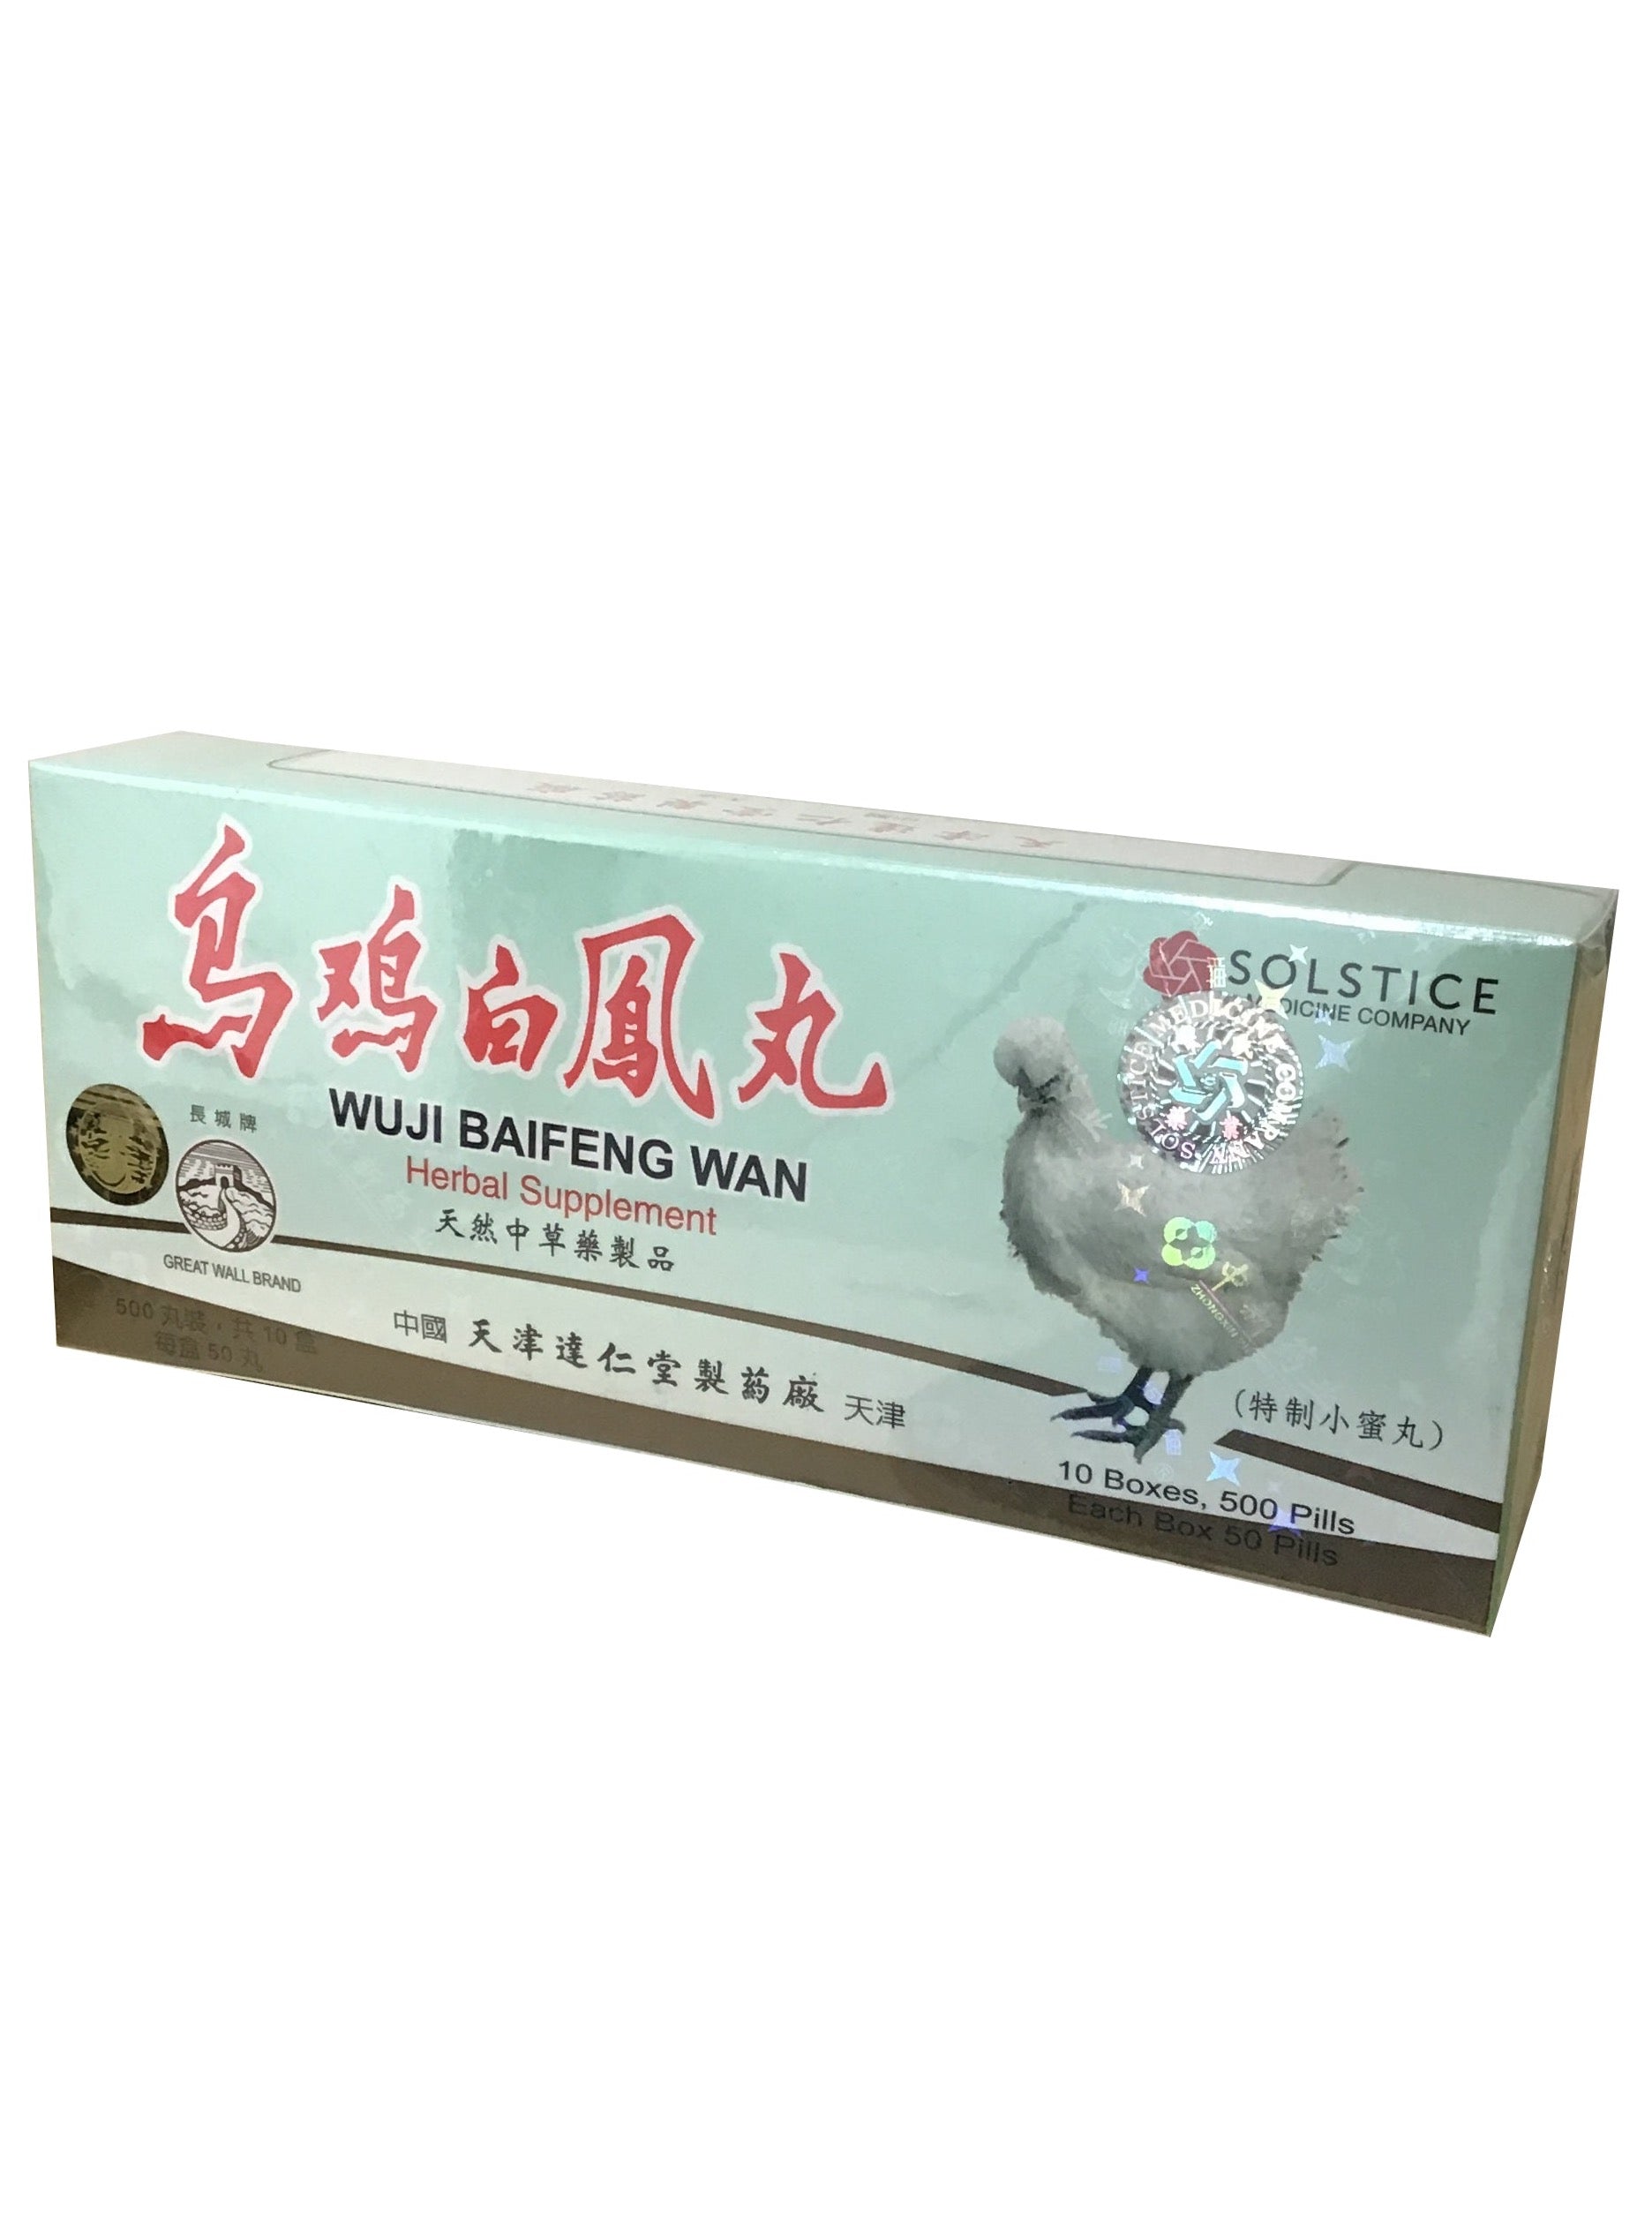 Wuji Baifeng Wan (500 Pills) 長城牌乌鸡白风丸– KHT Herbs & Goods